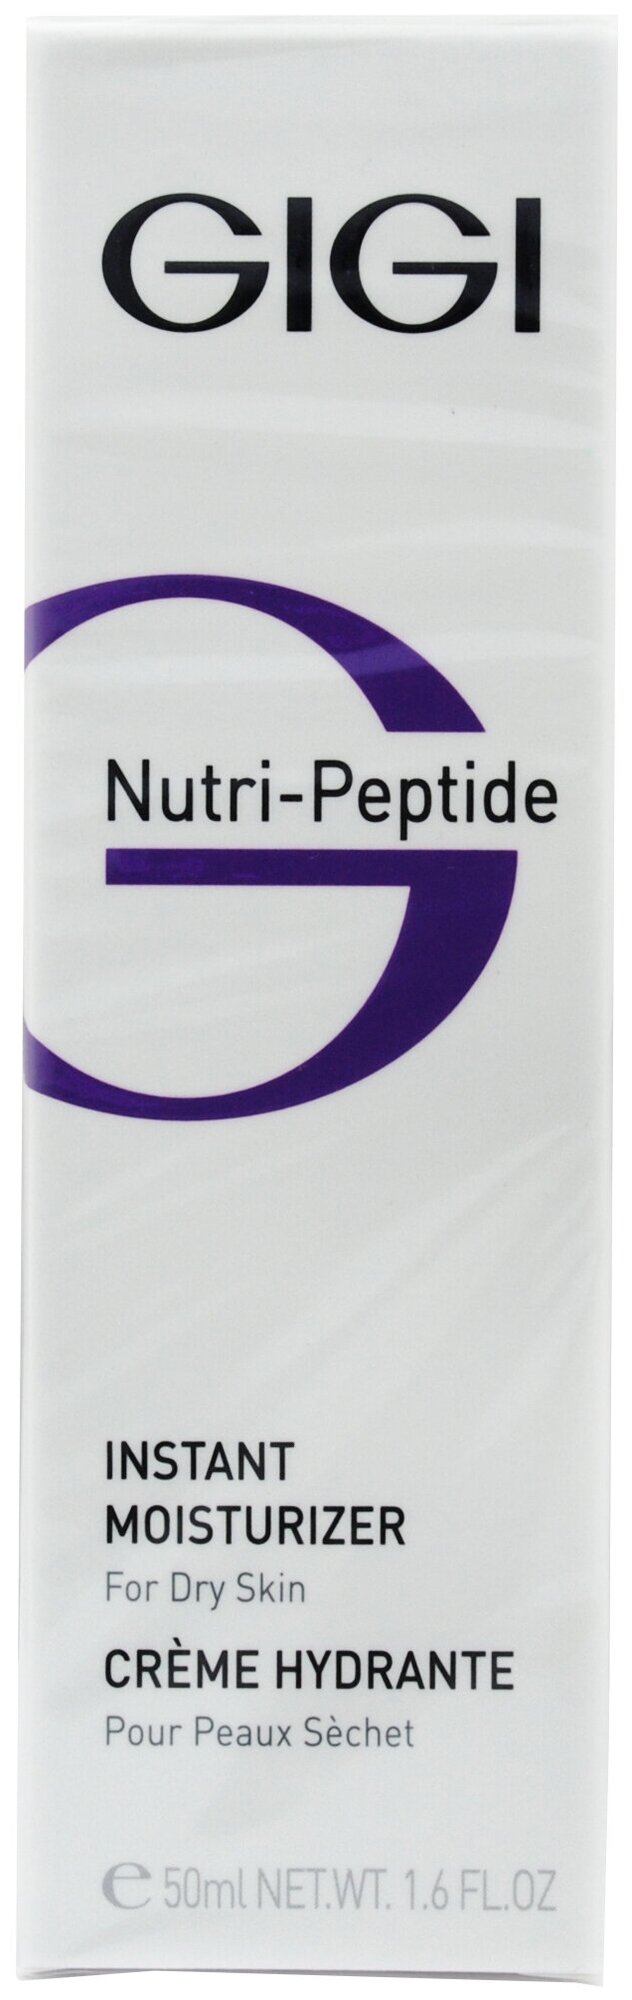 Gigi Nutri-Peptide Instant Moisturizer Пептидный крем мгновенное увлажнение для сухой кожи лица, 50 мл